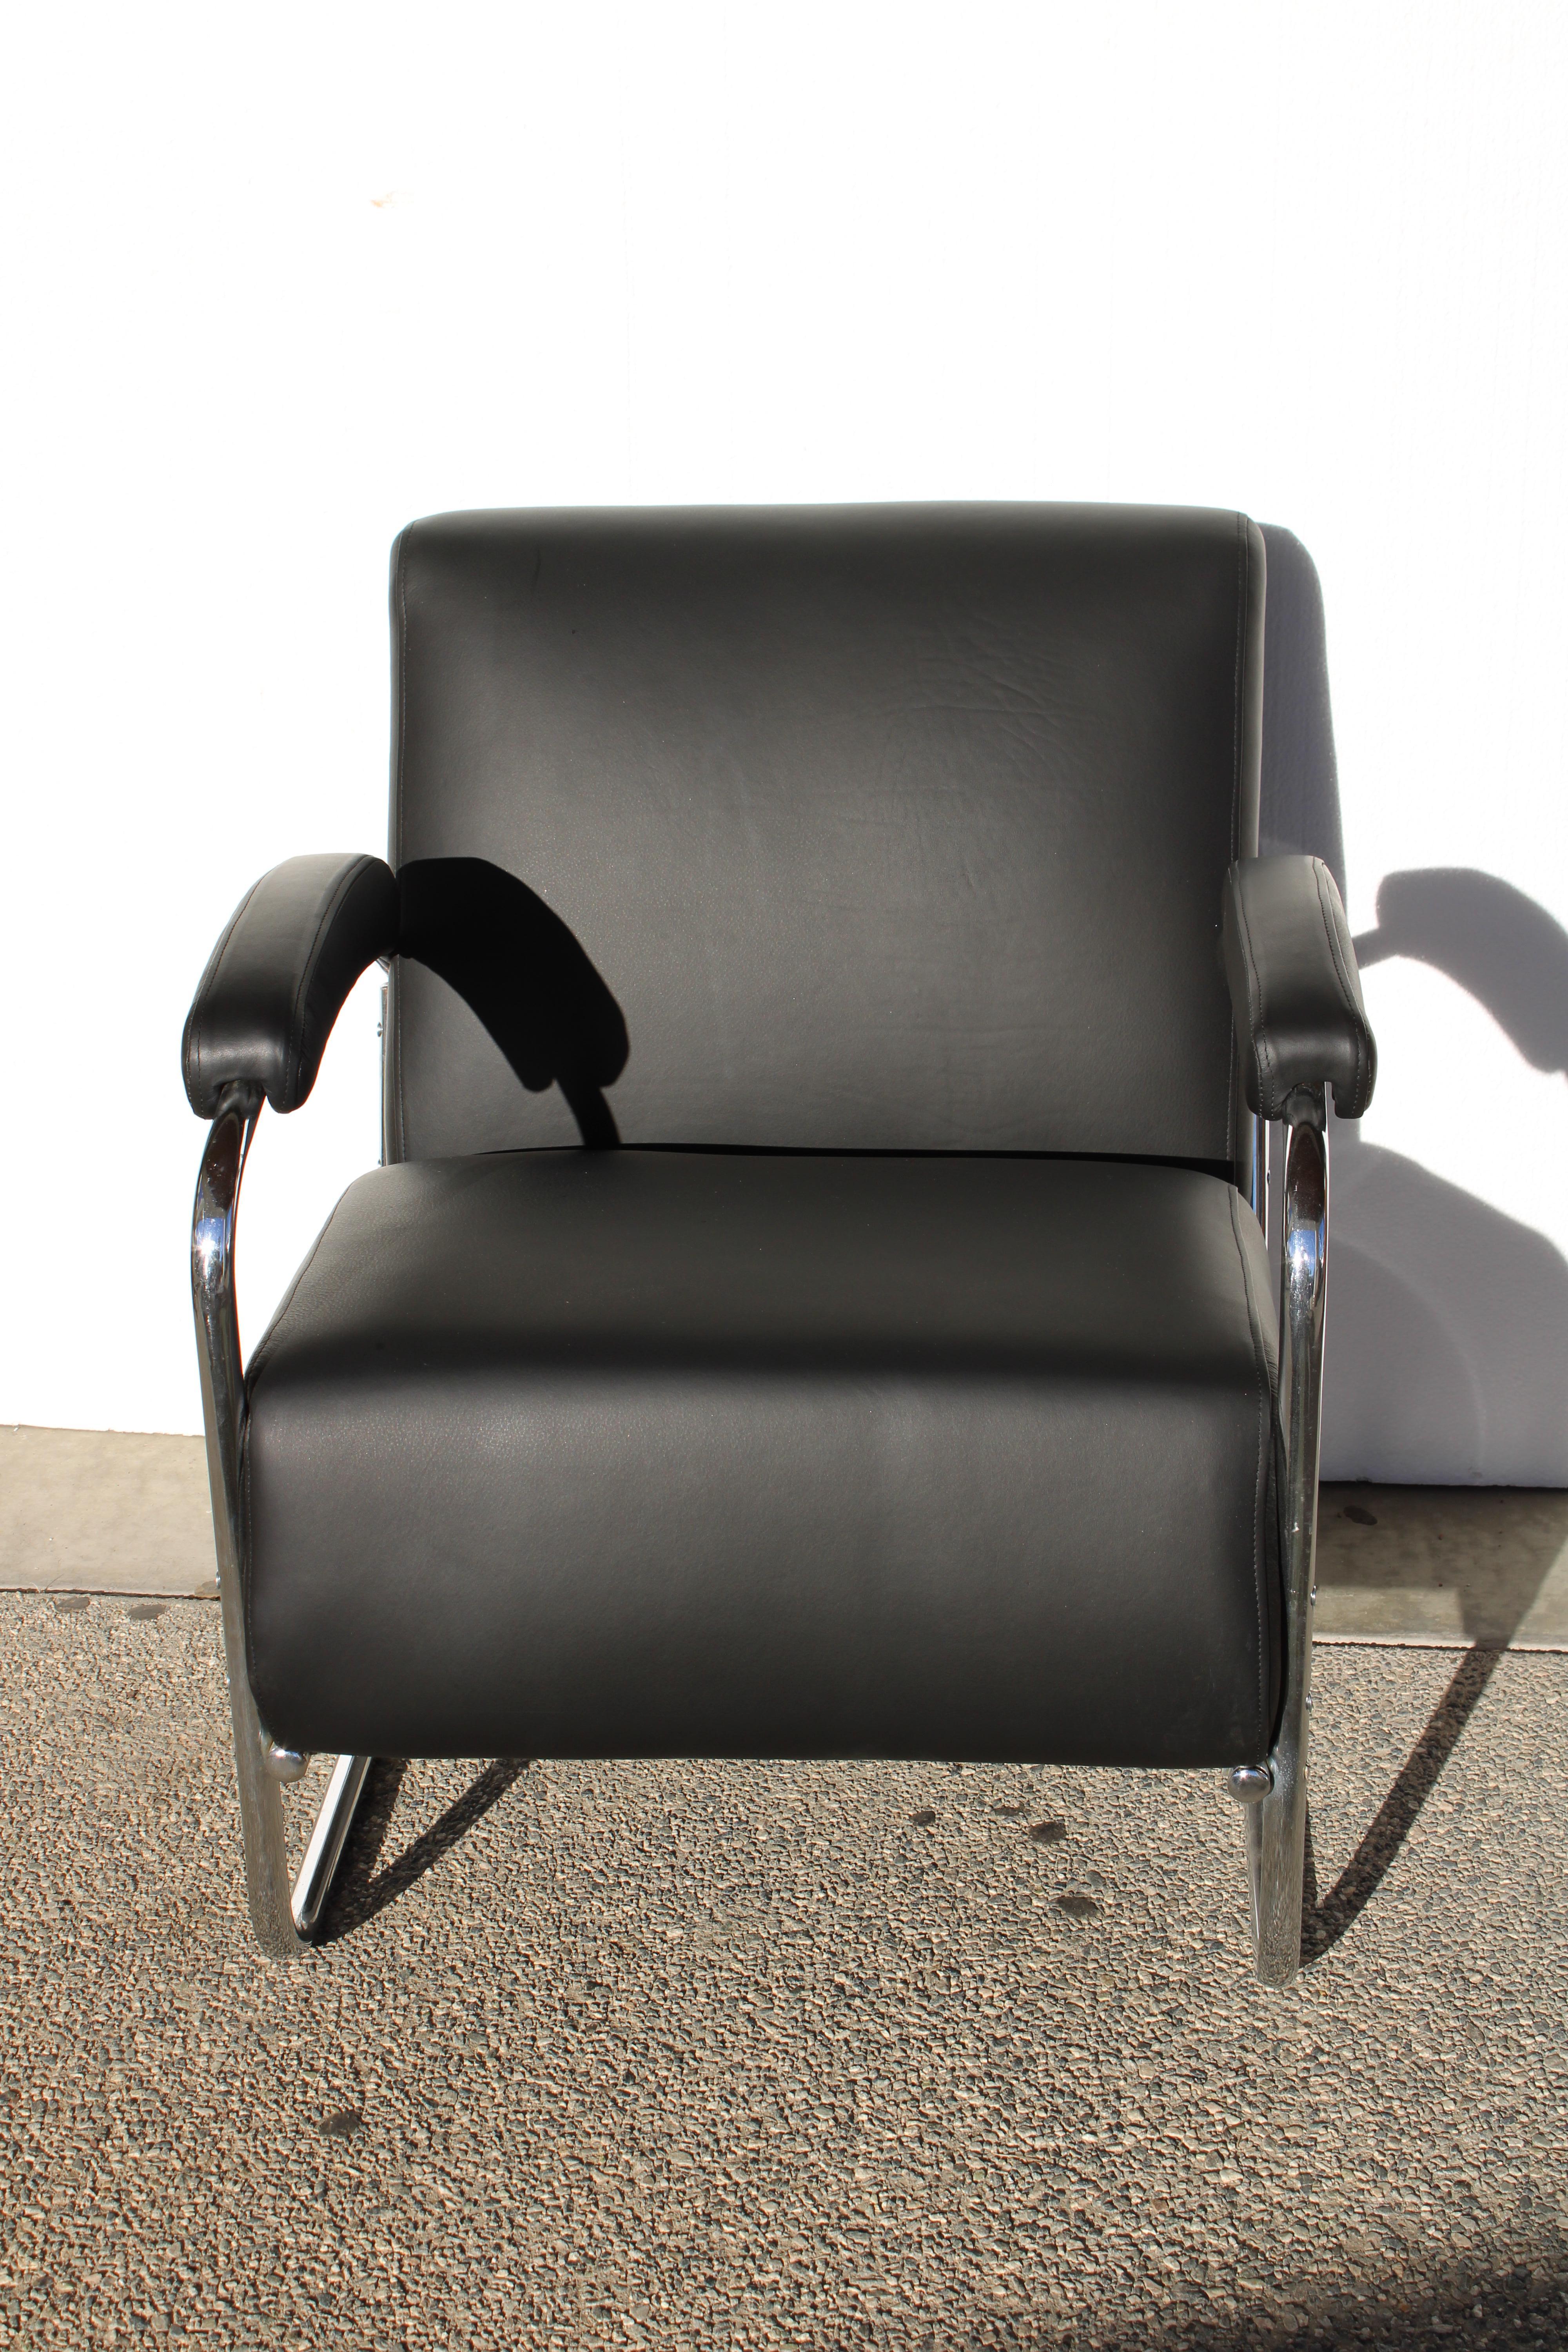 Cette chaise longue était à l'origine un canapé conçu par la Lloyds Manufactureing Company.  En raison de l'usure, nous avons décidé d'en faire une chaise longue confortable recouverte de cuir noir.  Le chrome de l'acier est entièrement d'origine. 